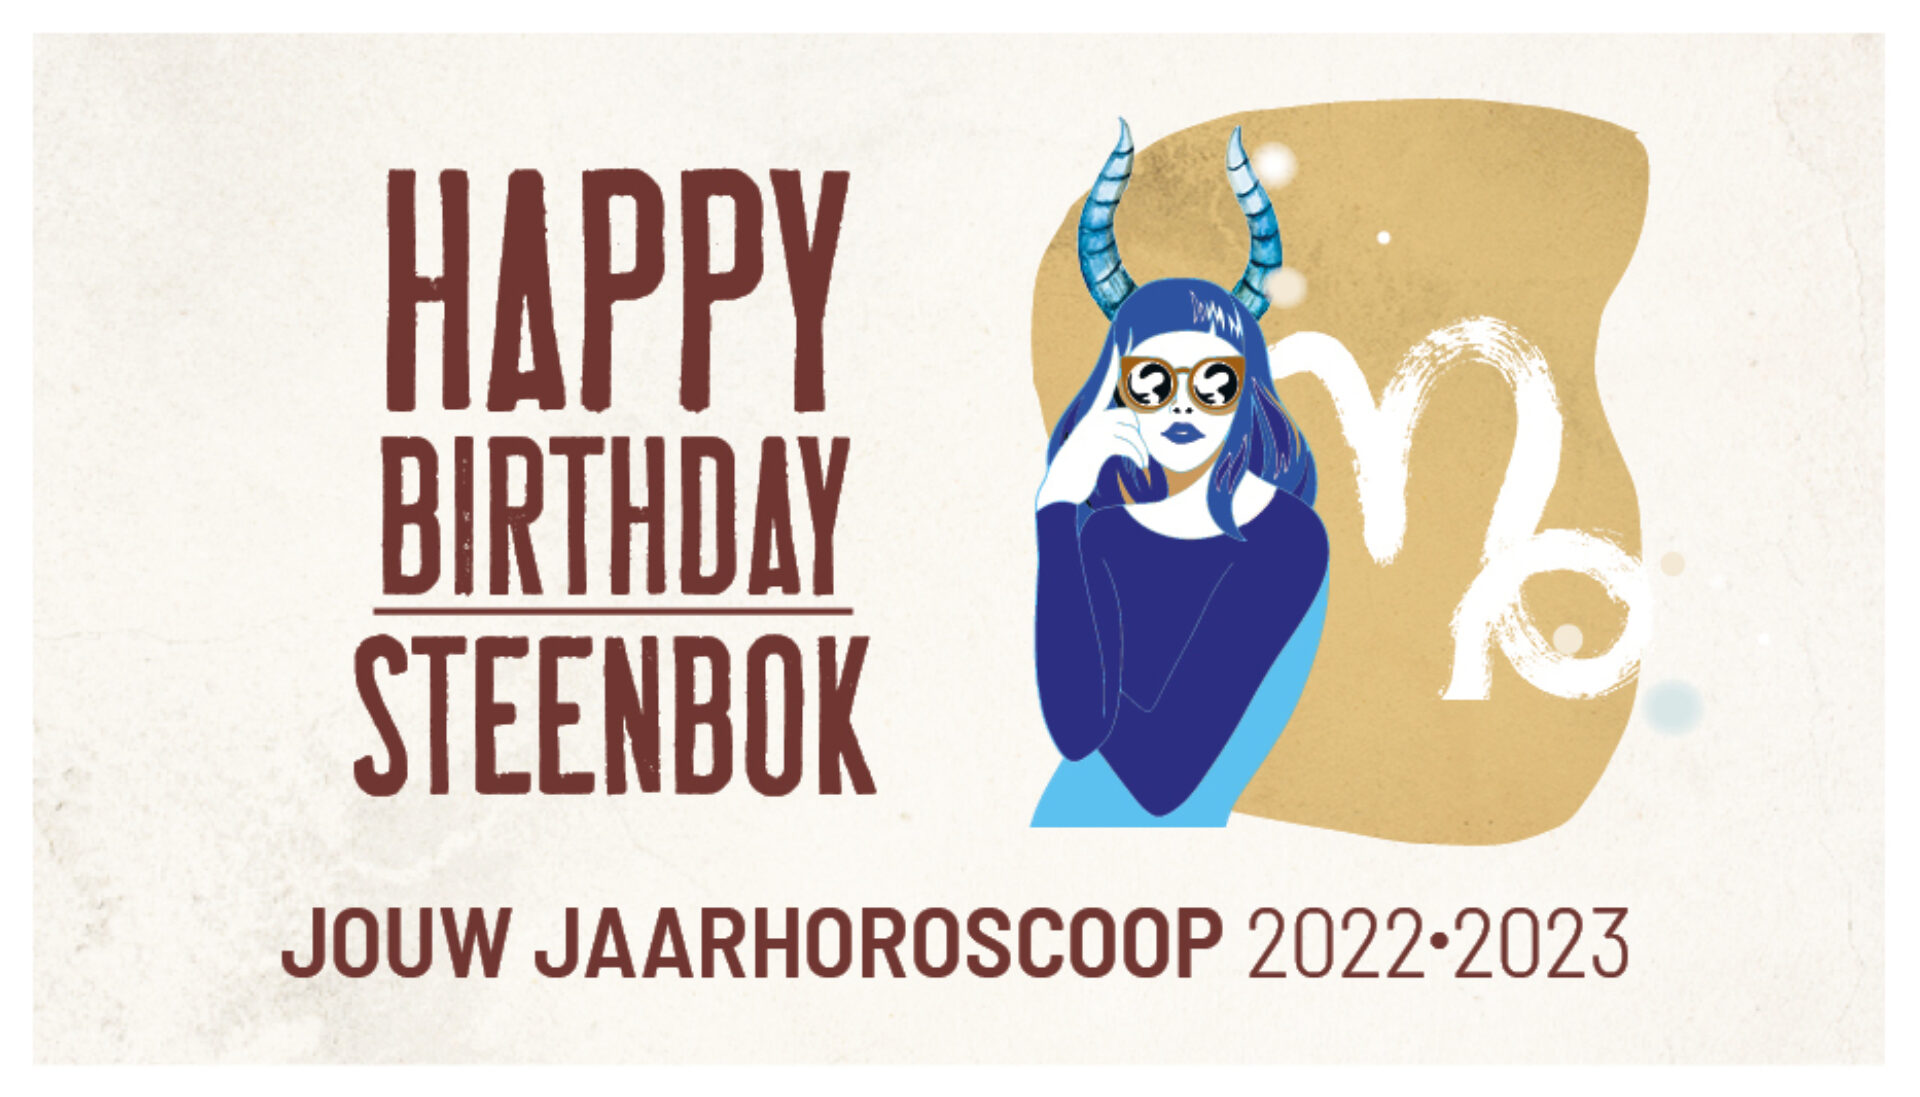 Steenbok, jouw jaarhoroscoop 2022-2023: gelukkige verjaardag!